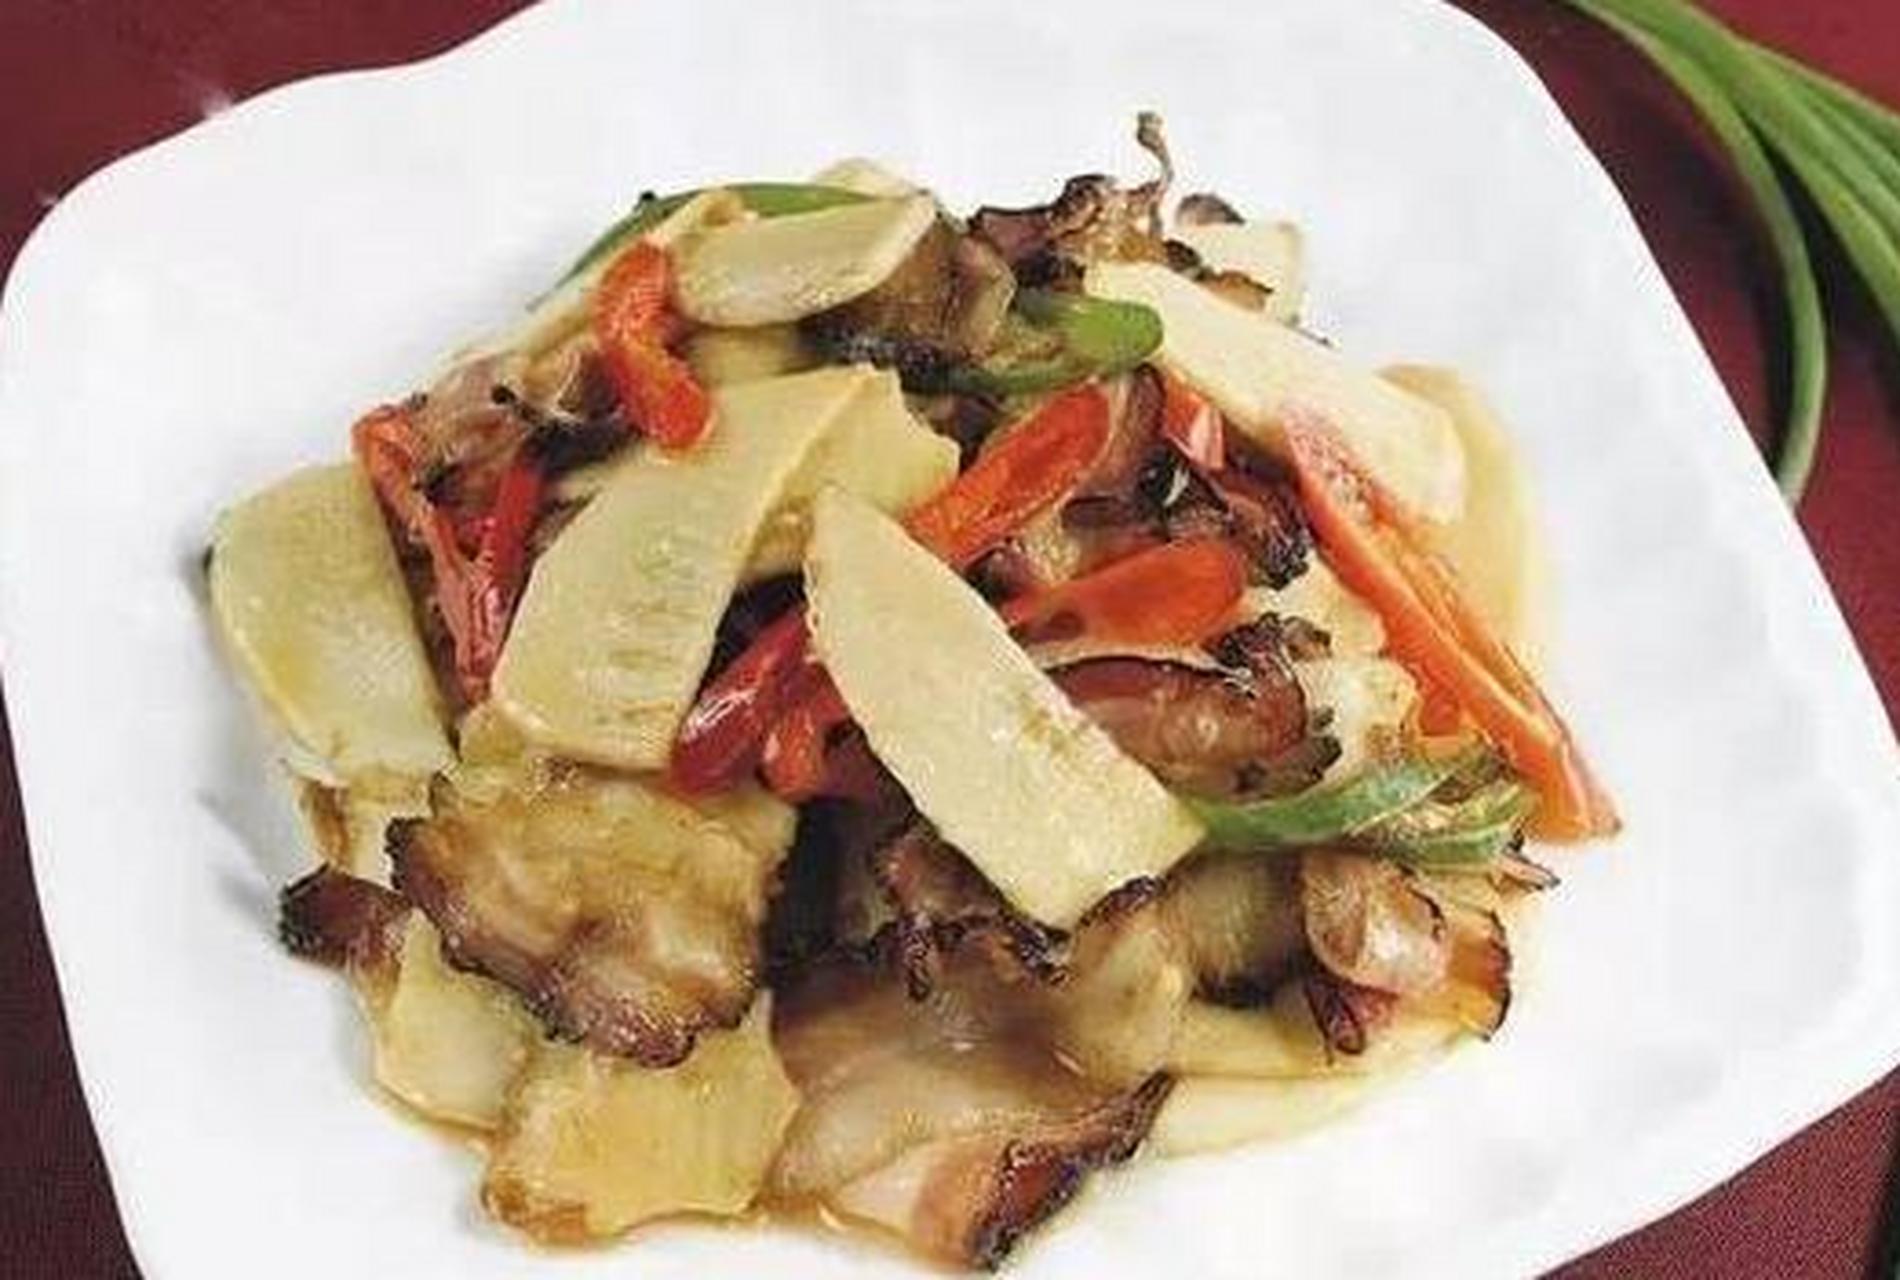 糟烩鞭笋是浙江省杭州市的一道特色名菜,属于浙菜系;该菜品以嫩鞭笋加